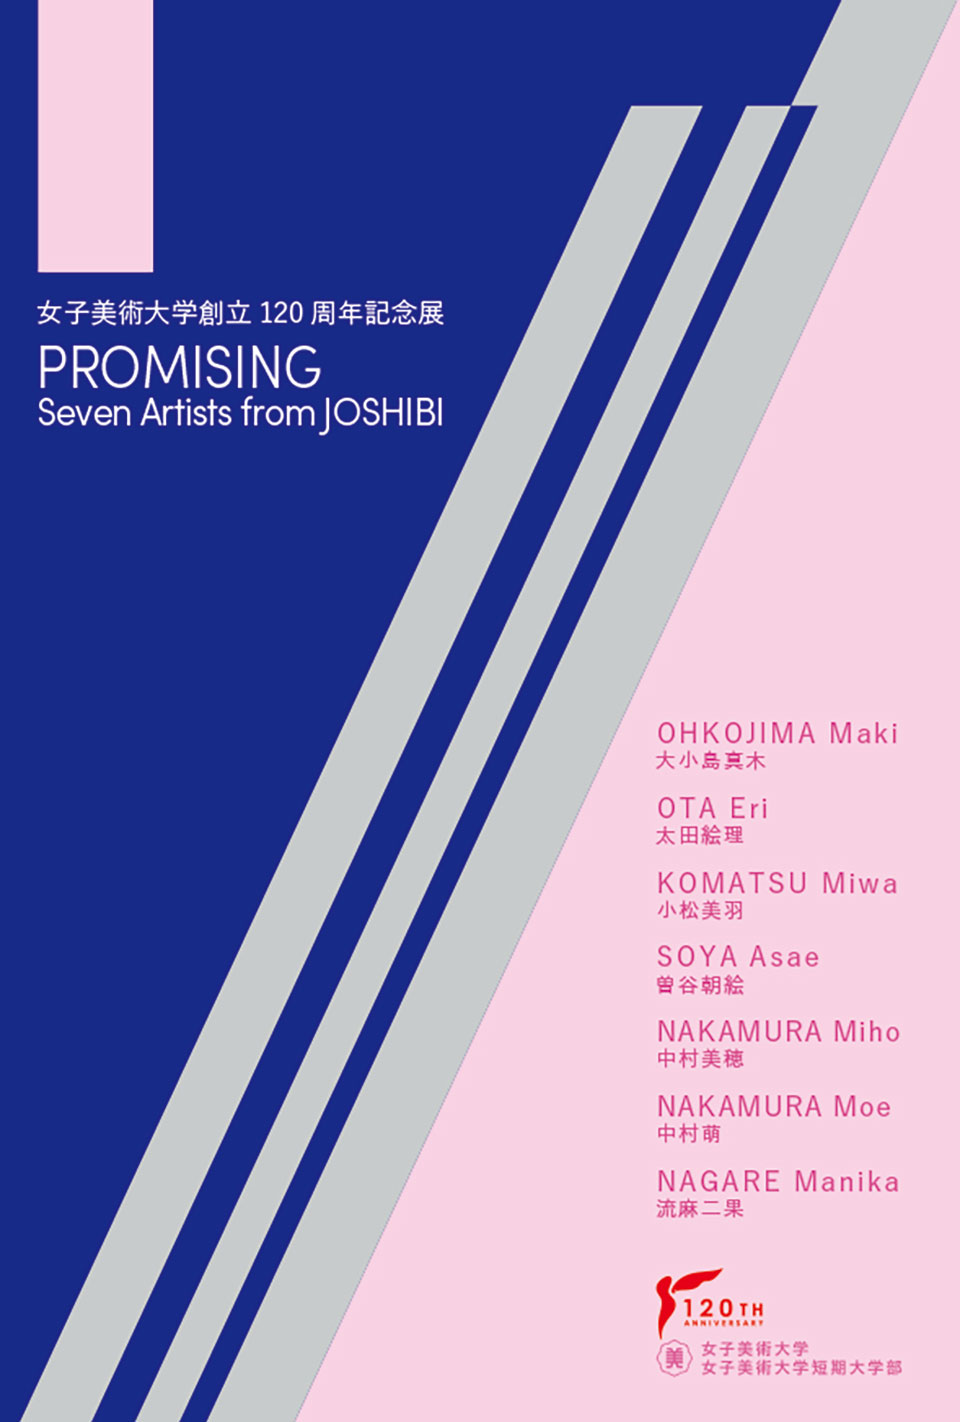 女子美術大学創立120周年記念展 PROMISING -Seven Artists from JOSHIBI-